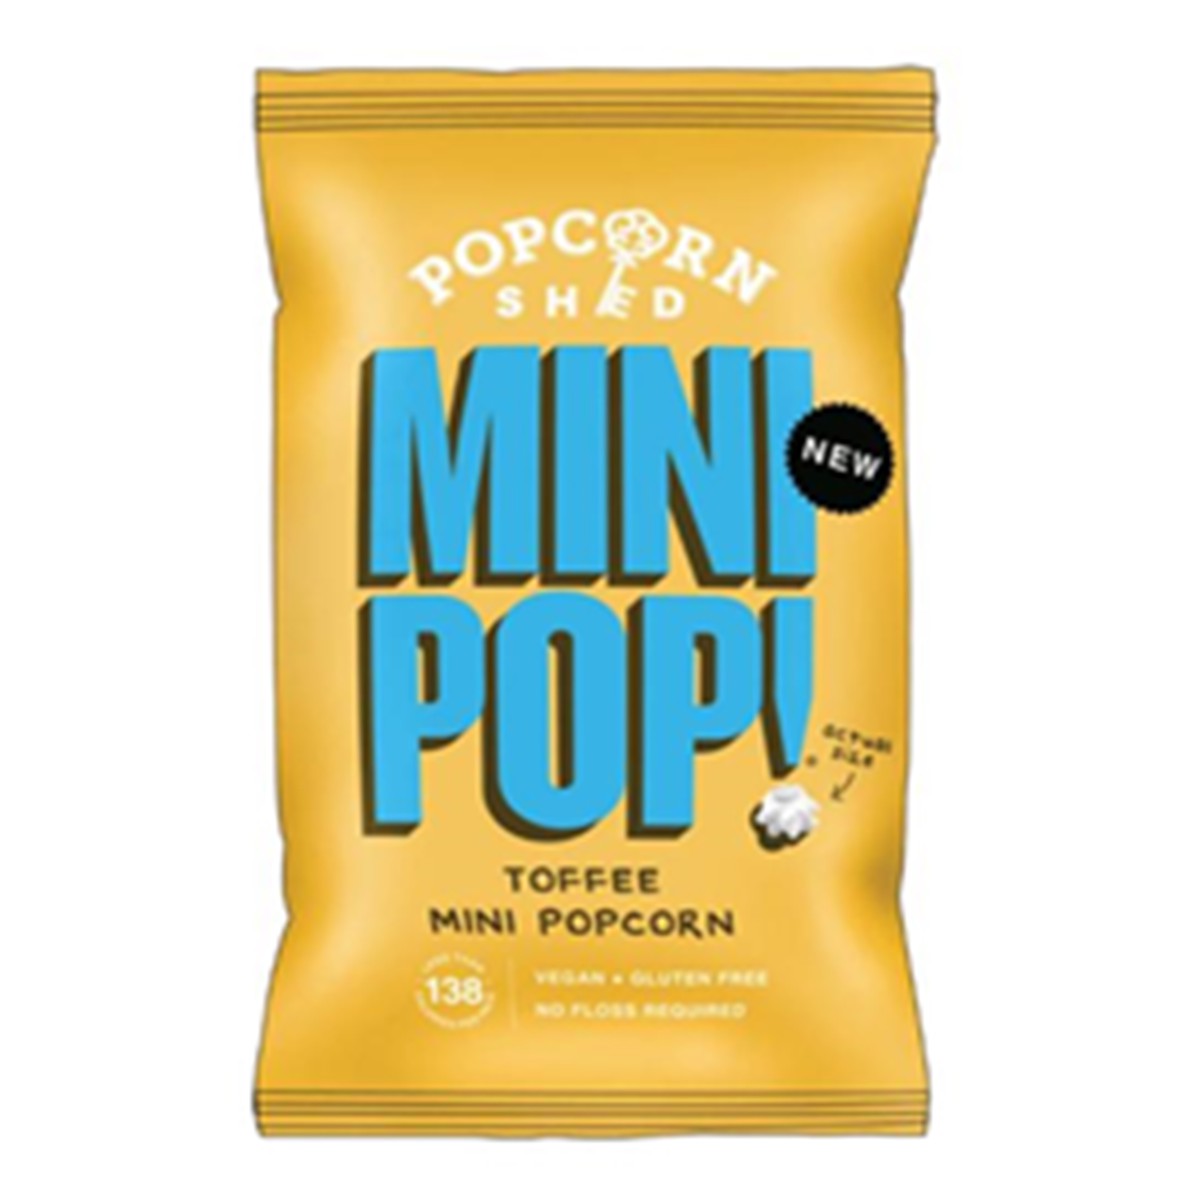 Popcorn Shed  Mini Popcorn Caramel au beurre 20gr  28gr